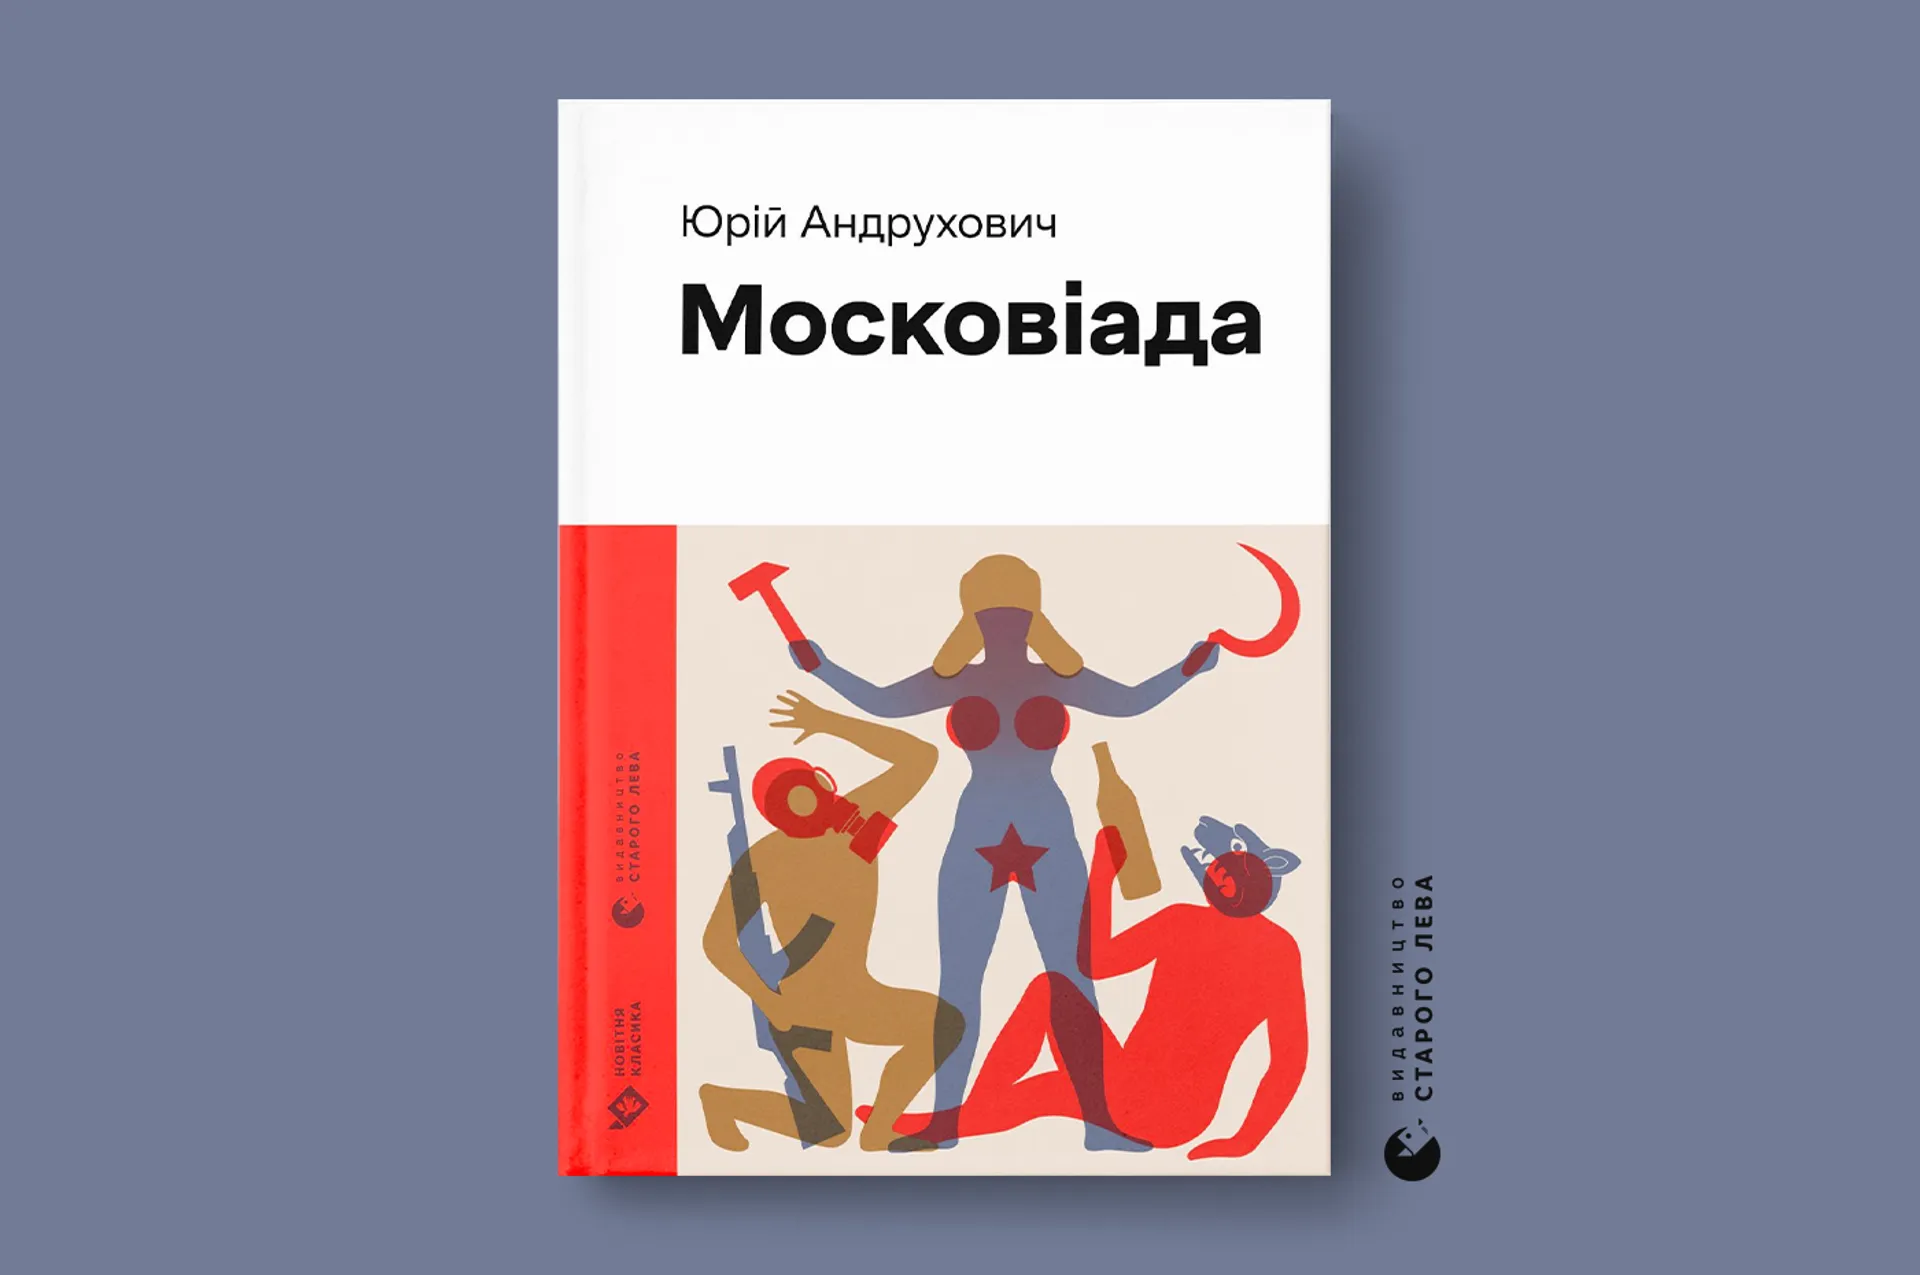 Ілюстрована «Московіада» Юрія Андруховича – перша книга серії «Новітня класика» від Старого Лева